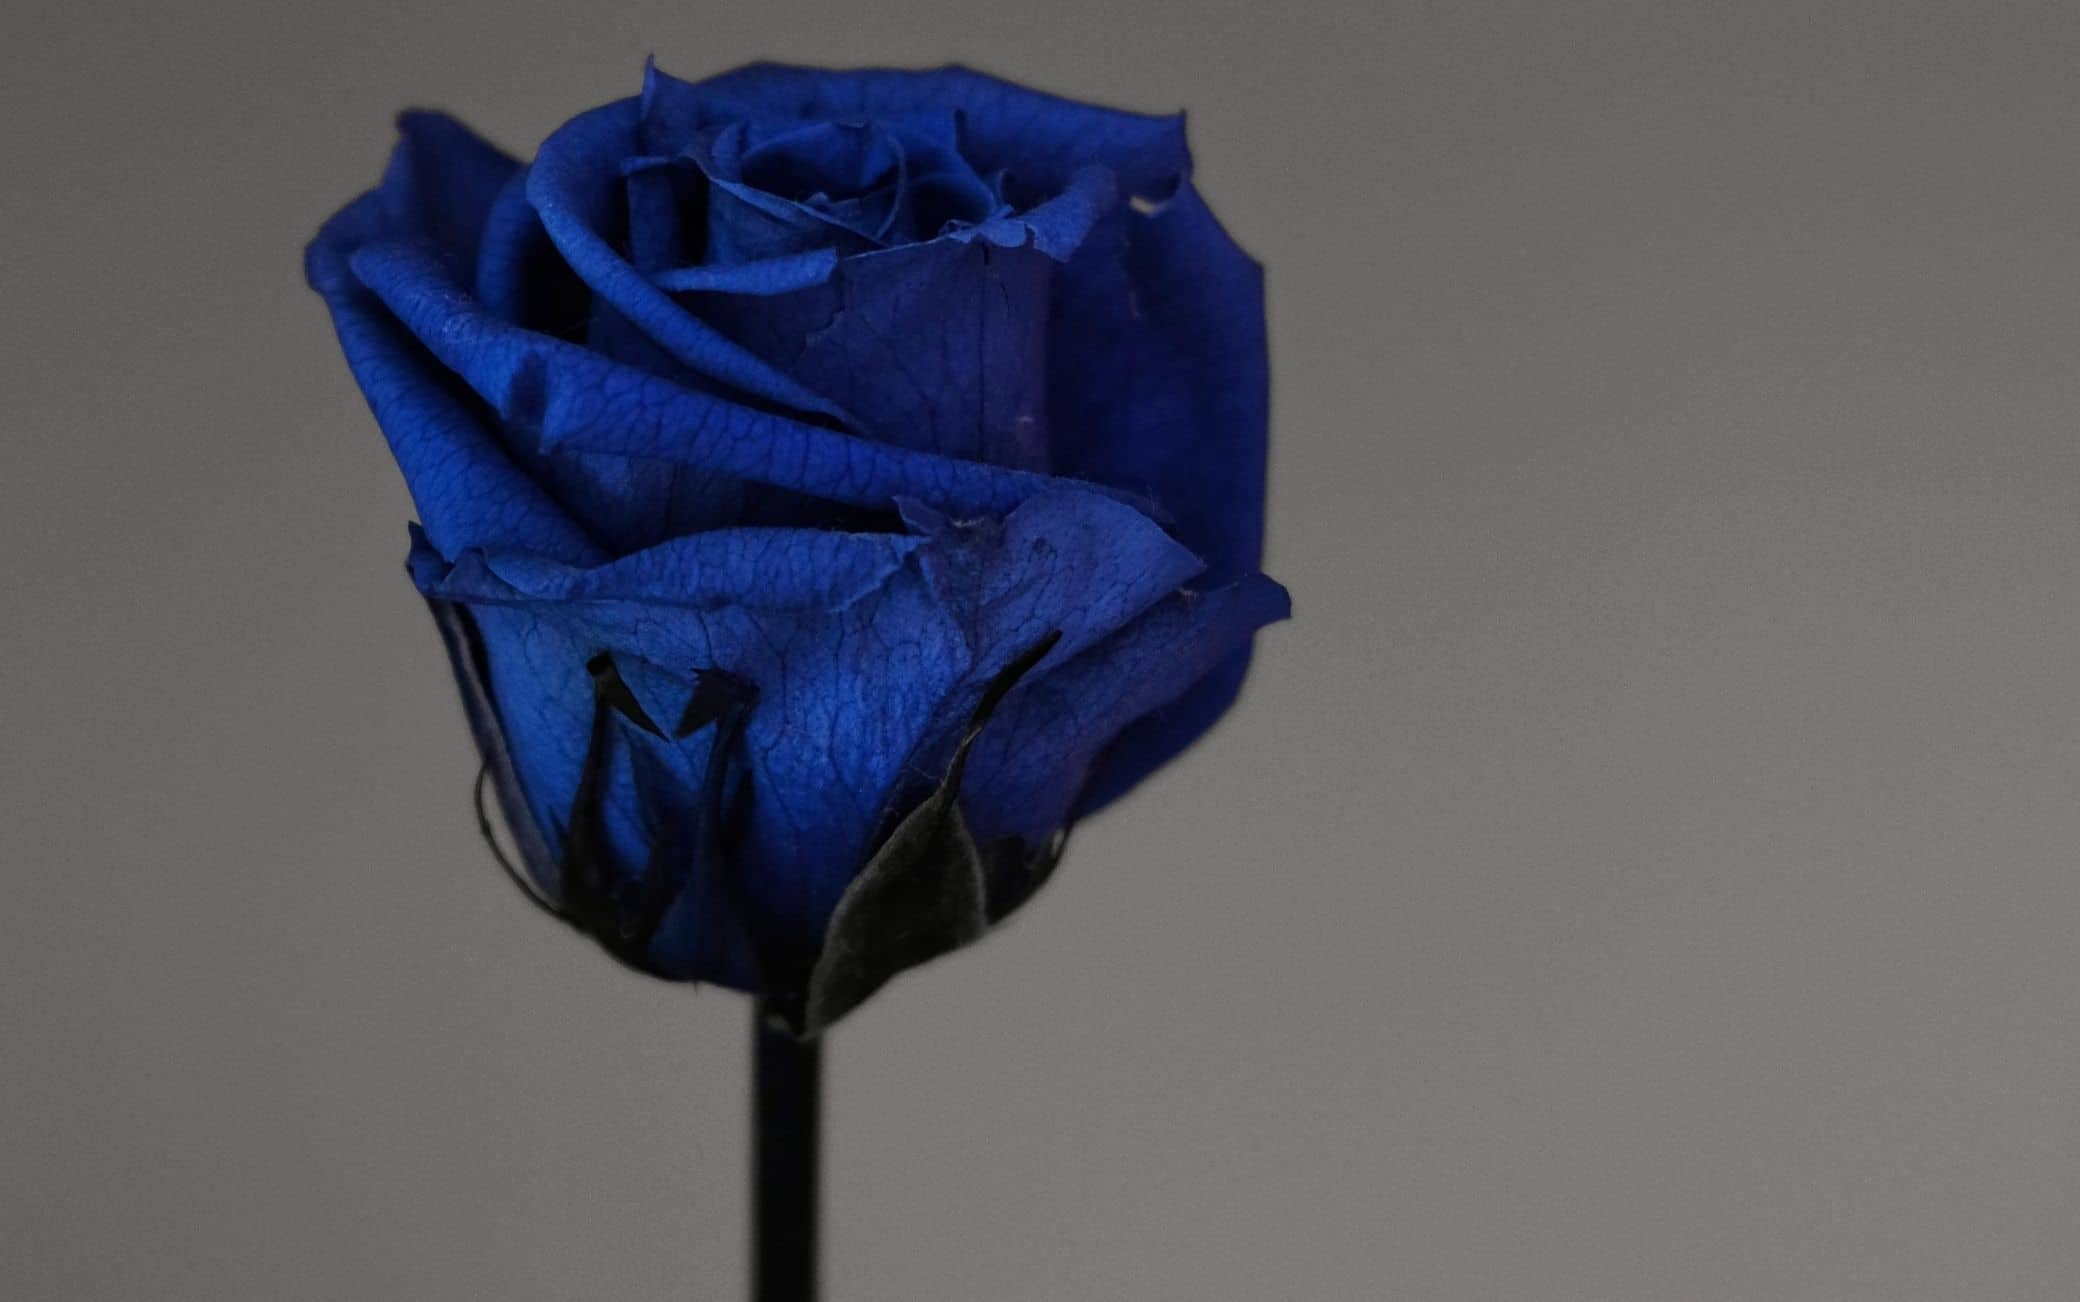 Rose blu, il significato